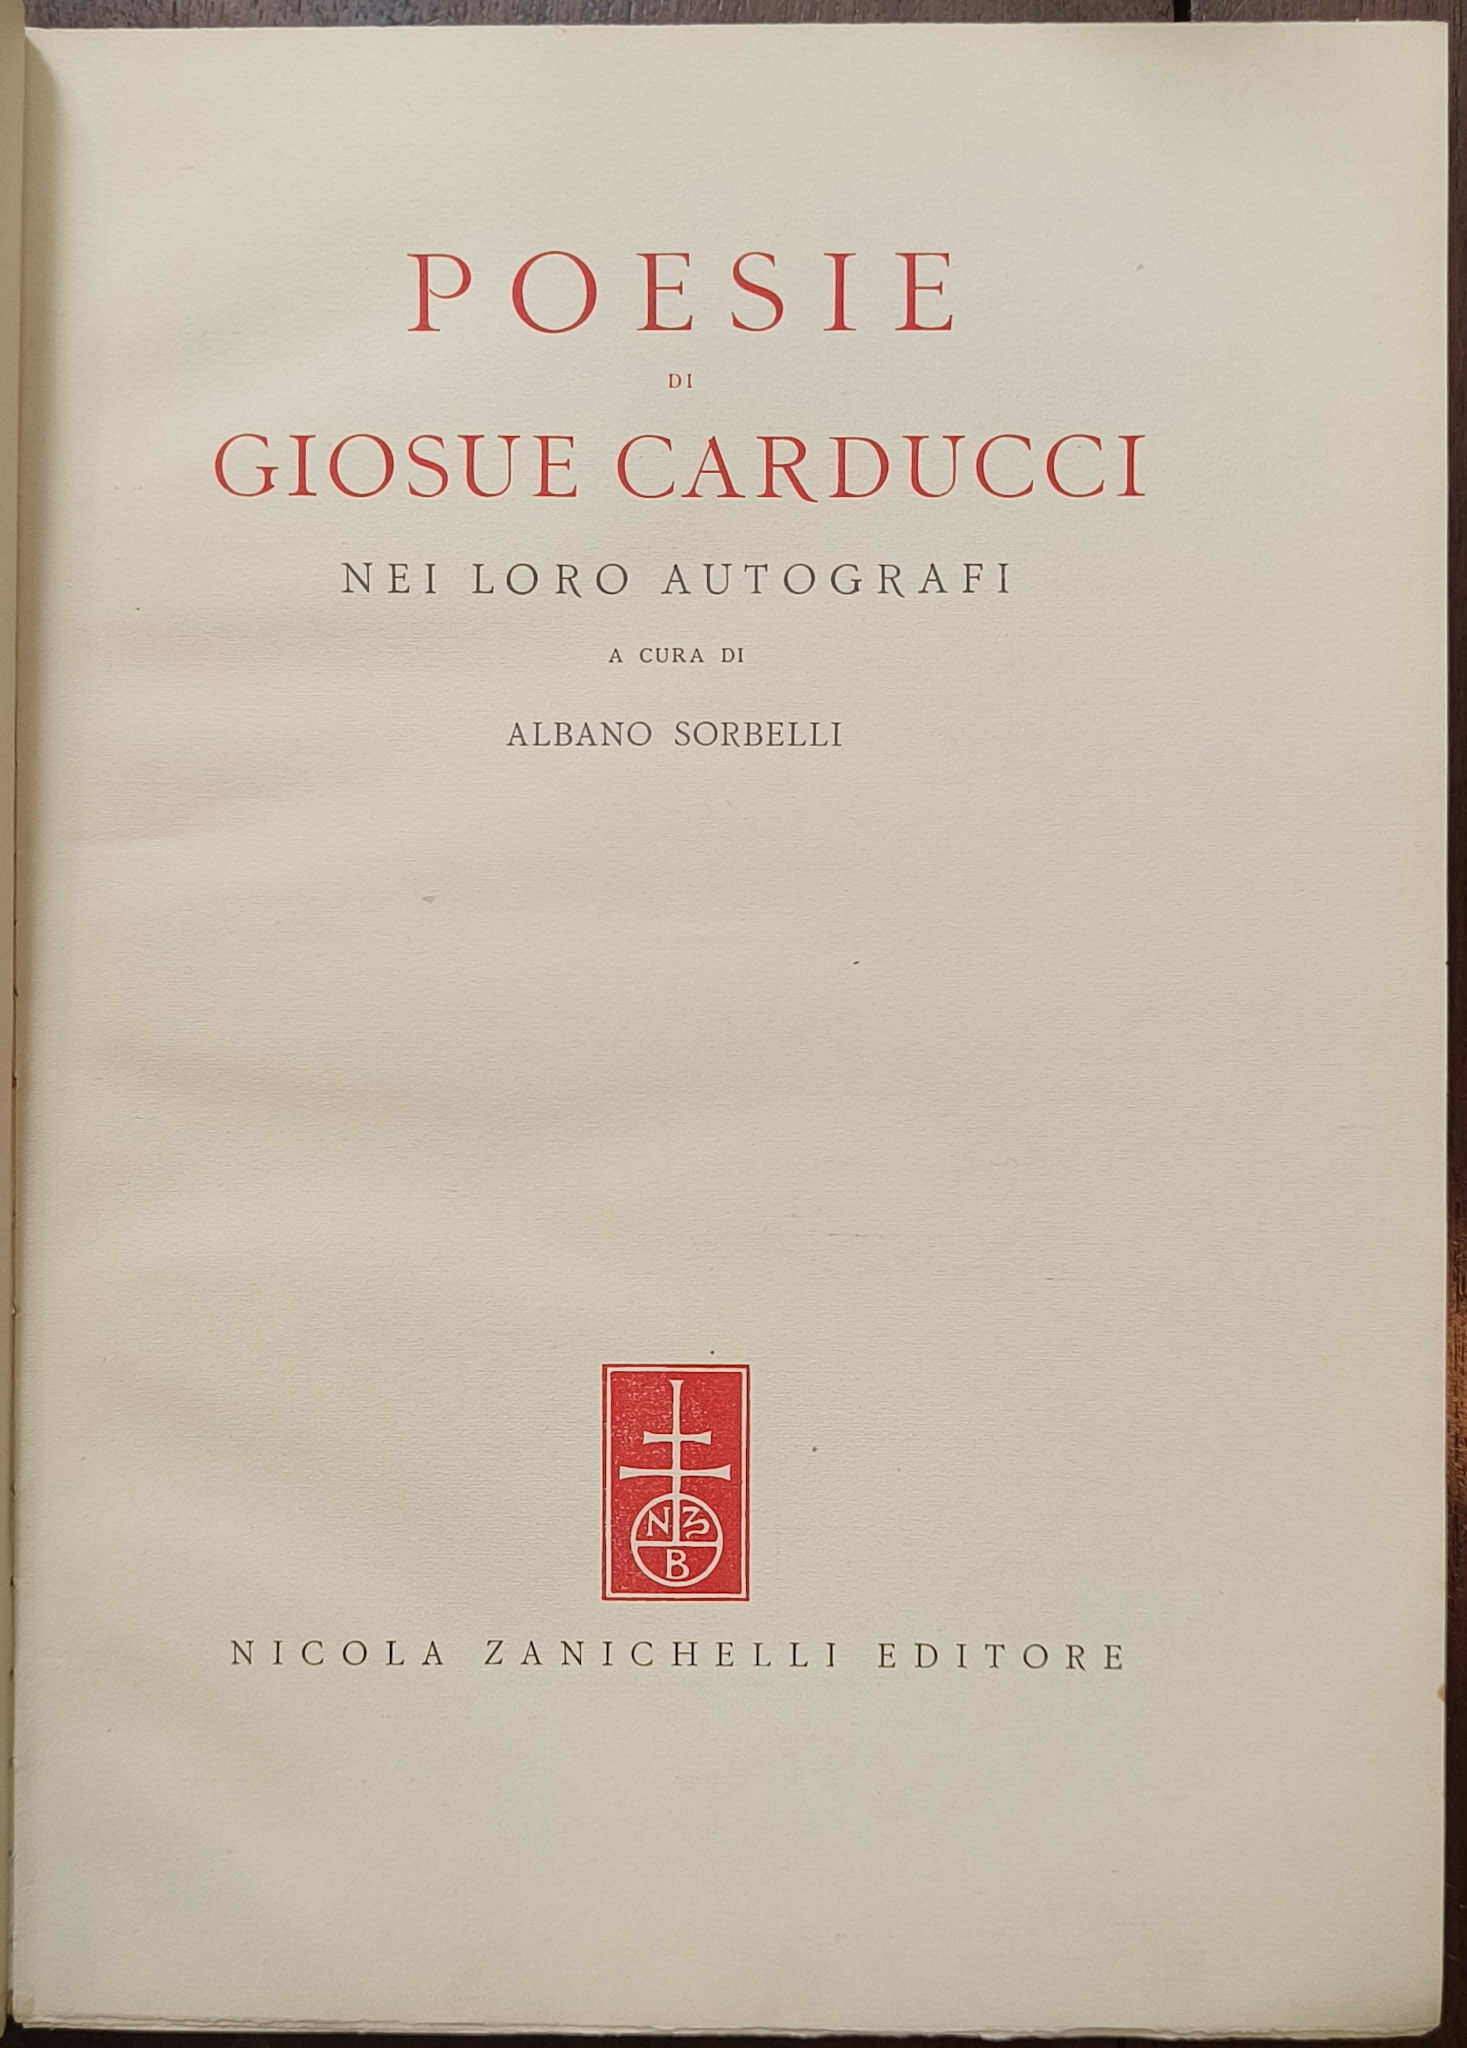 Poesie di Giosuè Carducci nei loro autografi